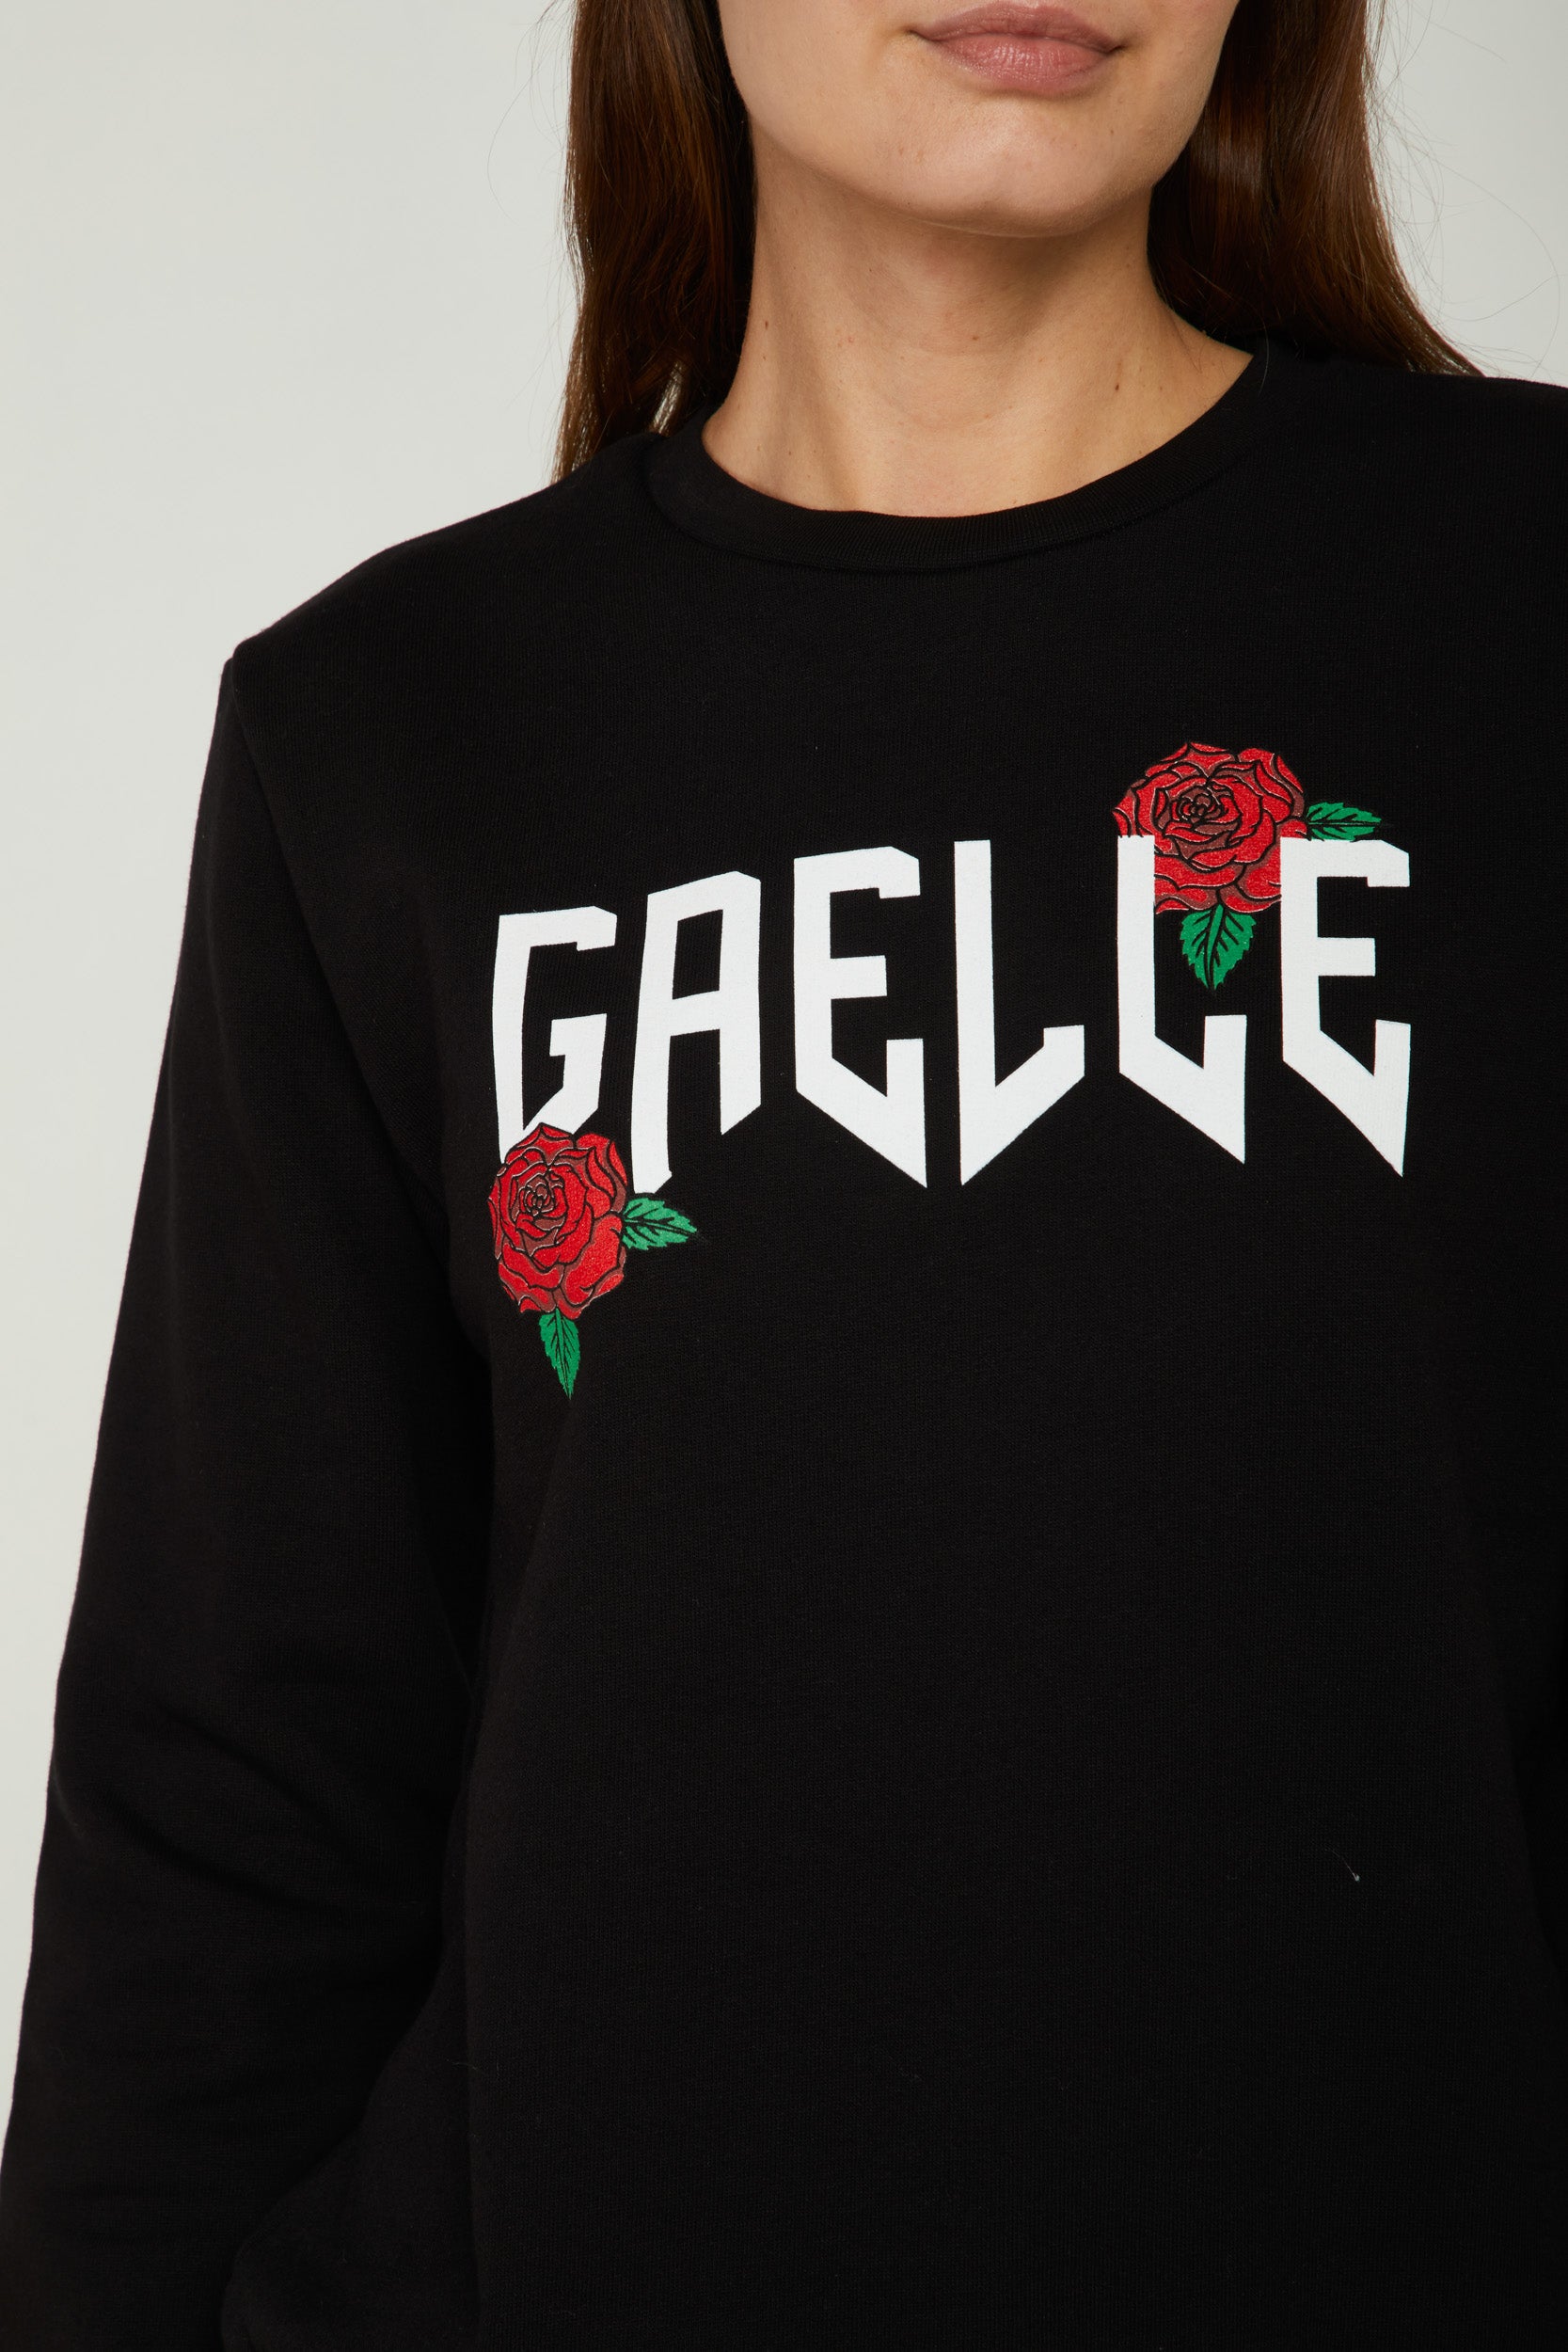 GAELLE Black Sweatshirt with Logo